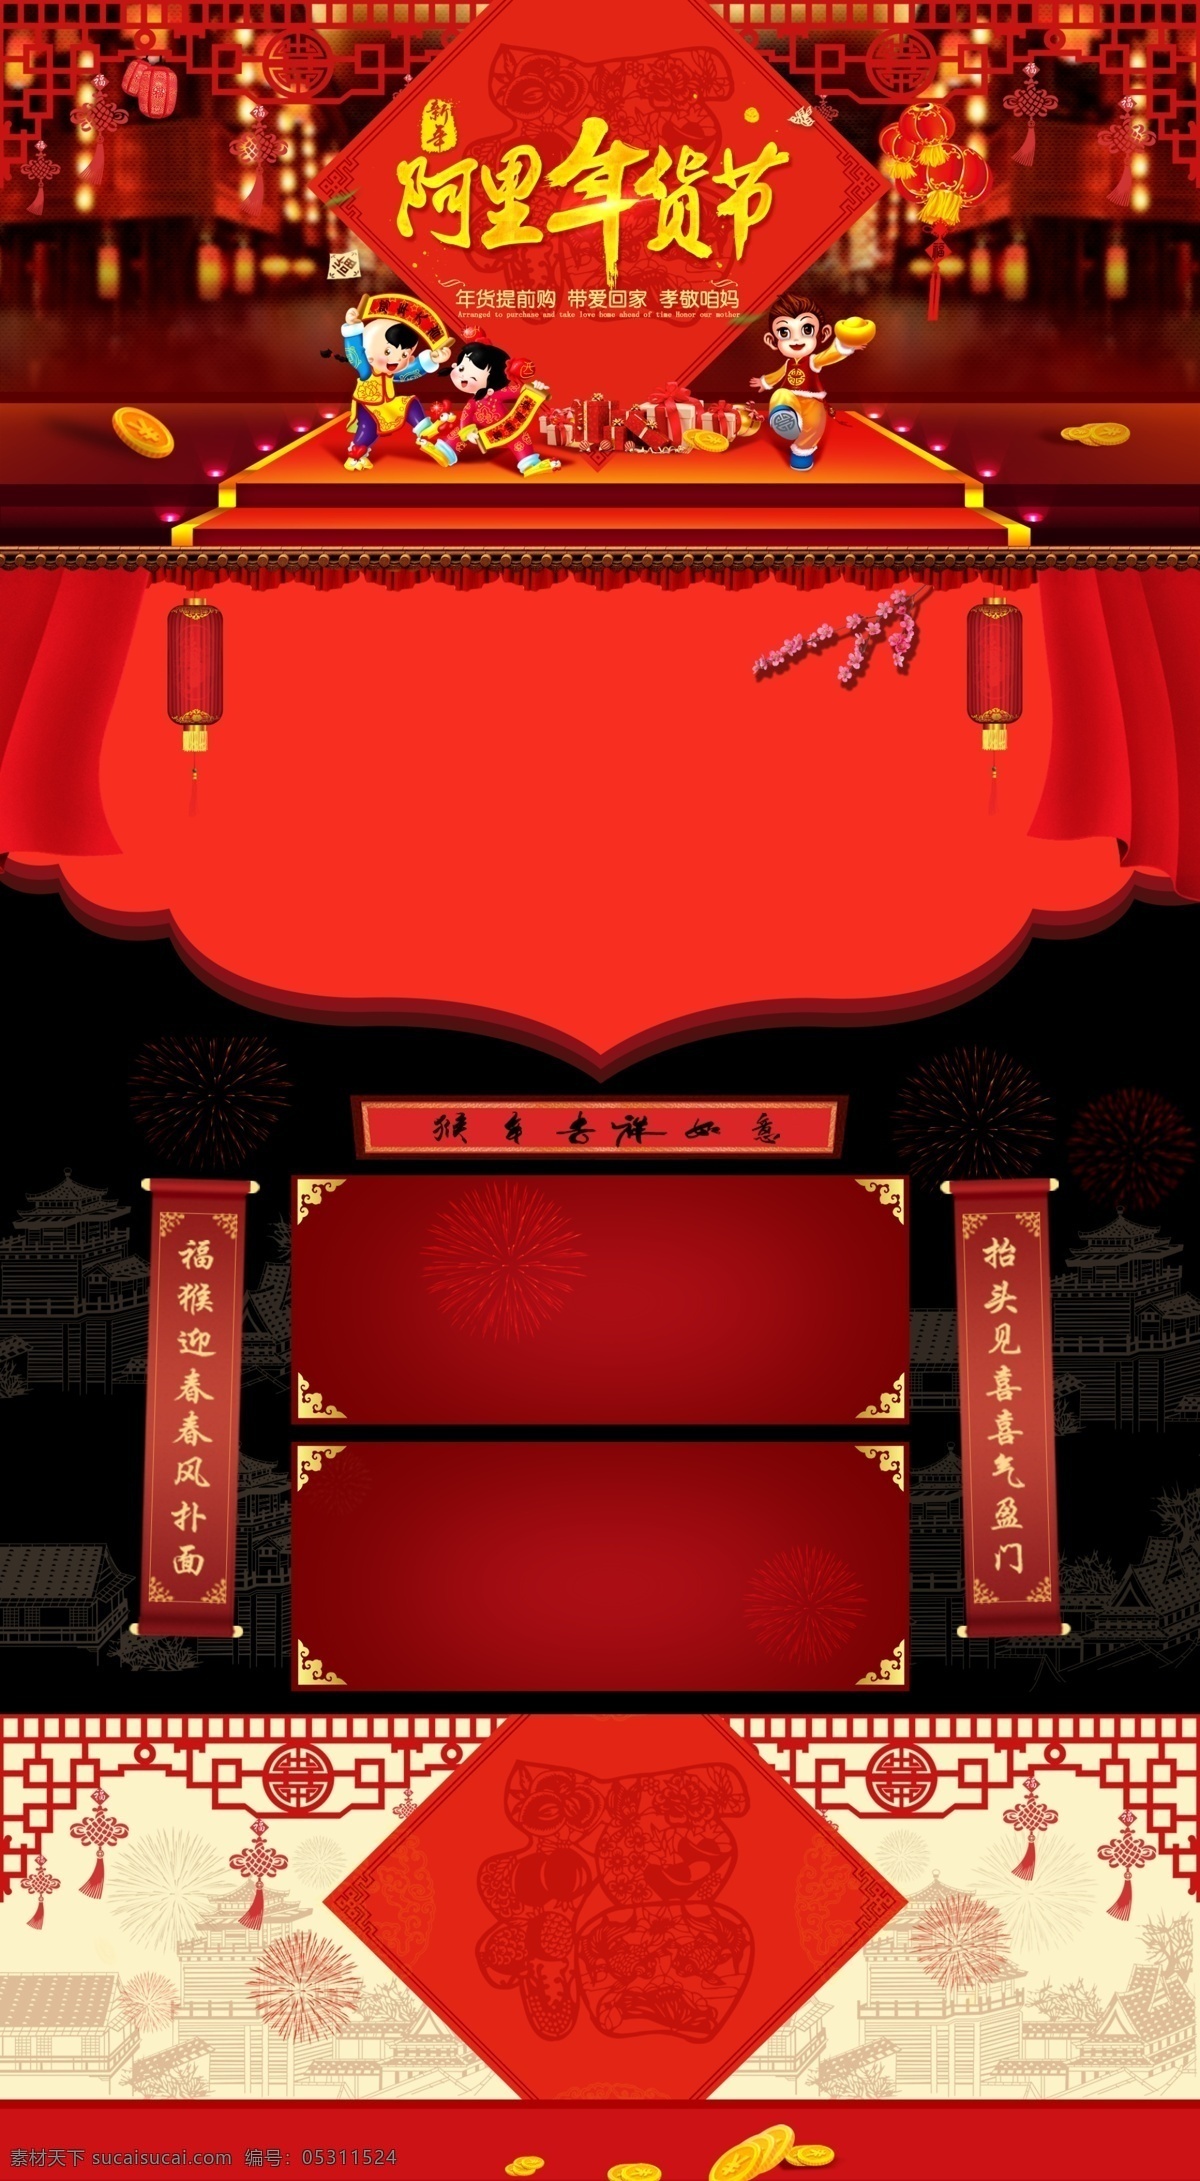 淘宝 天猫 猴年 年货 节 首页 店铺 装修 模板 淘宝素材 淘宝设计 淘宝模板下载 红色